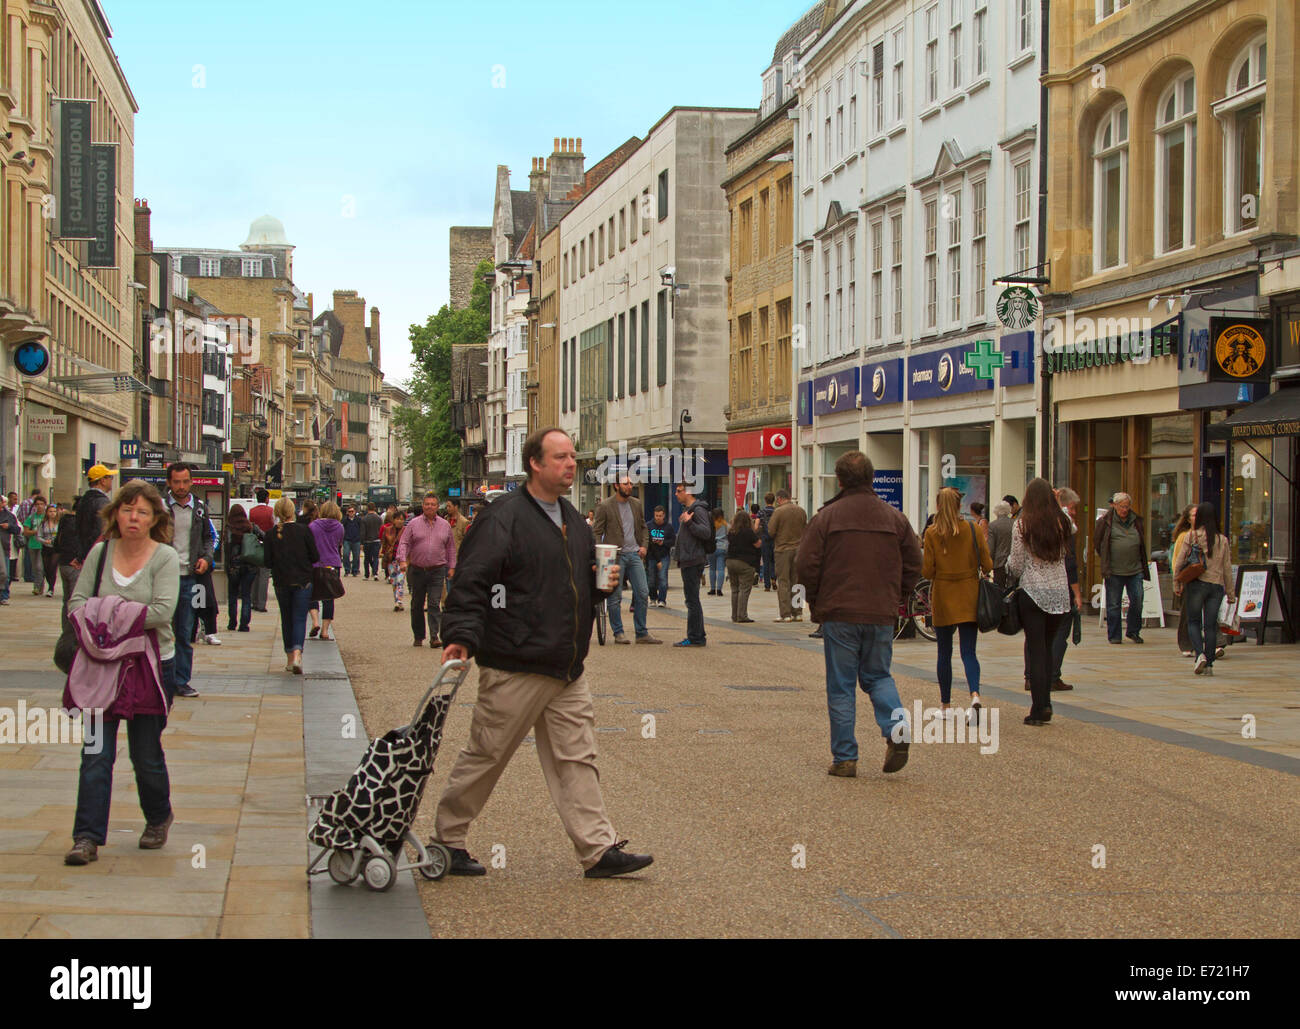 Mall pedonale in Cornmarket Street affollate di persone in area dello shopping nel cuore della storica città di Oxford in Inghilterra, Regno Unito Foto Stock